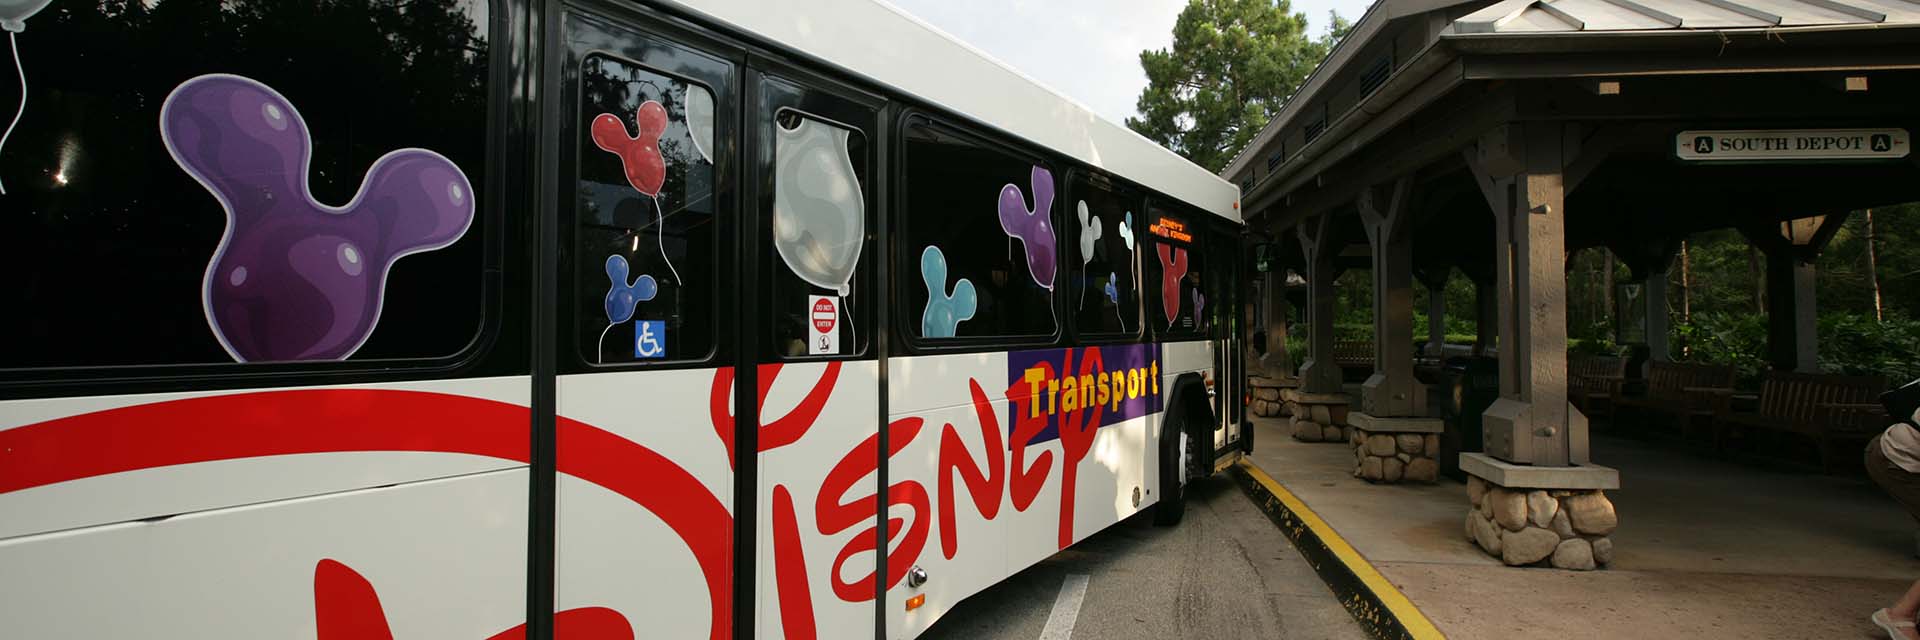 Disney Boardwalk - bus